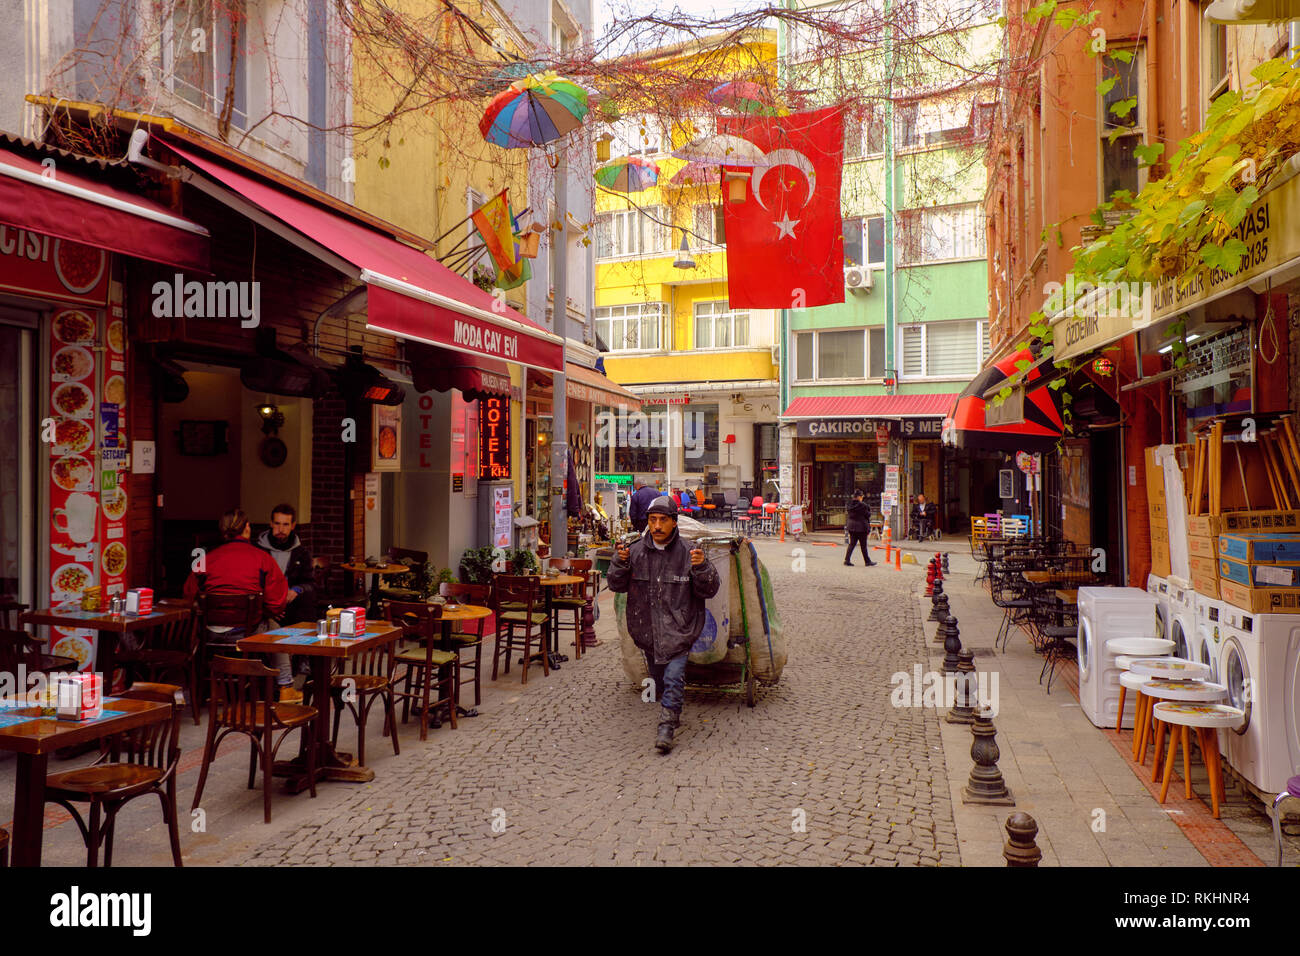 Lokale Mann erholt Waren auf einer Fußgängerzone mit Geschäften im Zentrum von Kadikoy, auf der asiatischen Seite von Istanbul, Türkei - Dezember 2018 Stockfoto